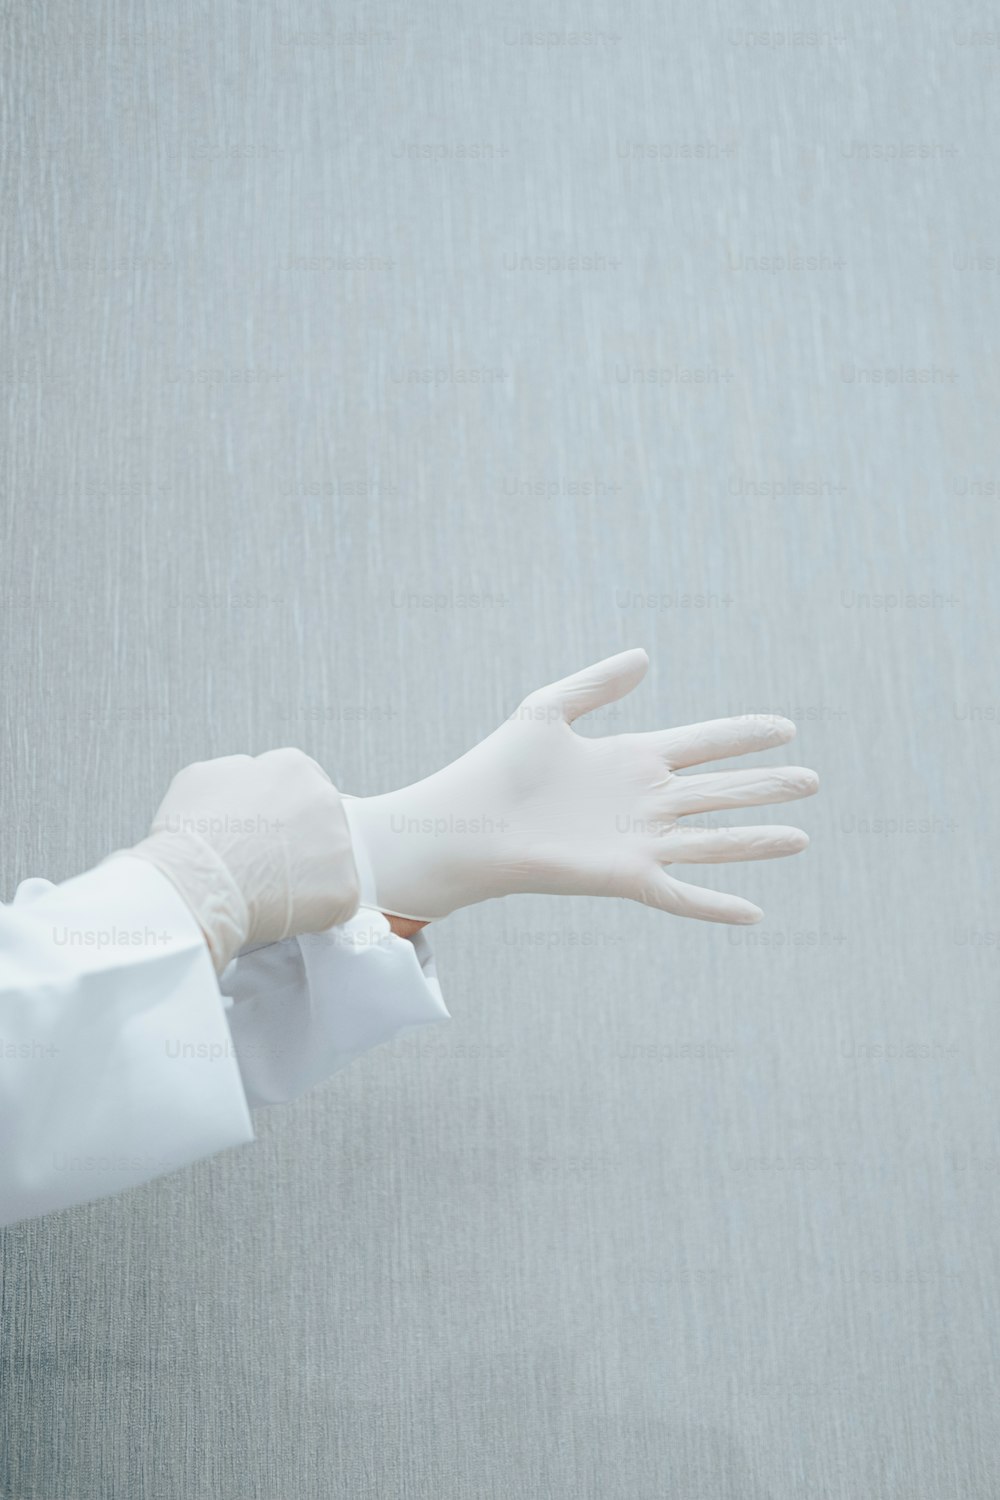 une main gantée avec un gant blanc dessus